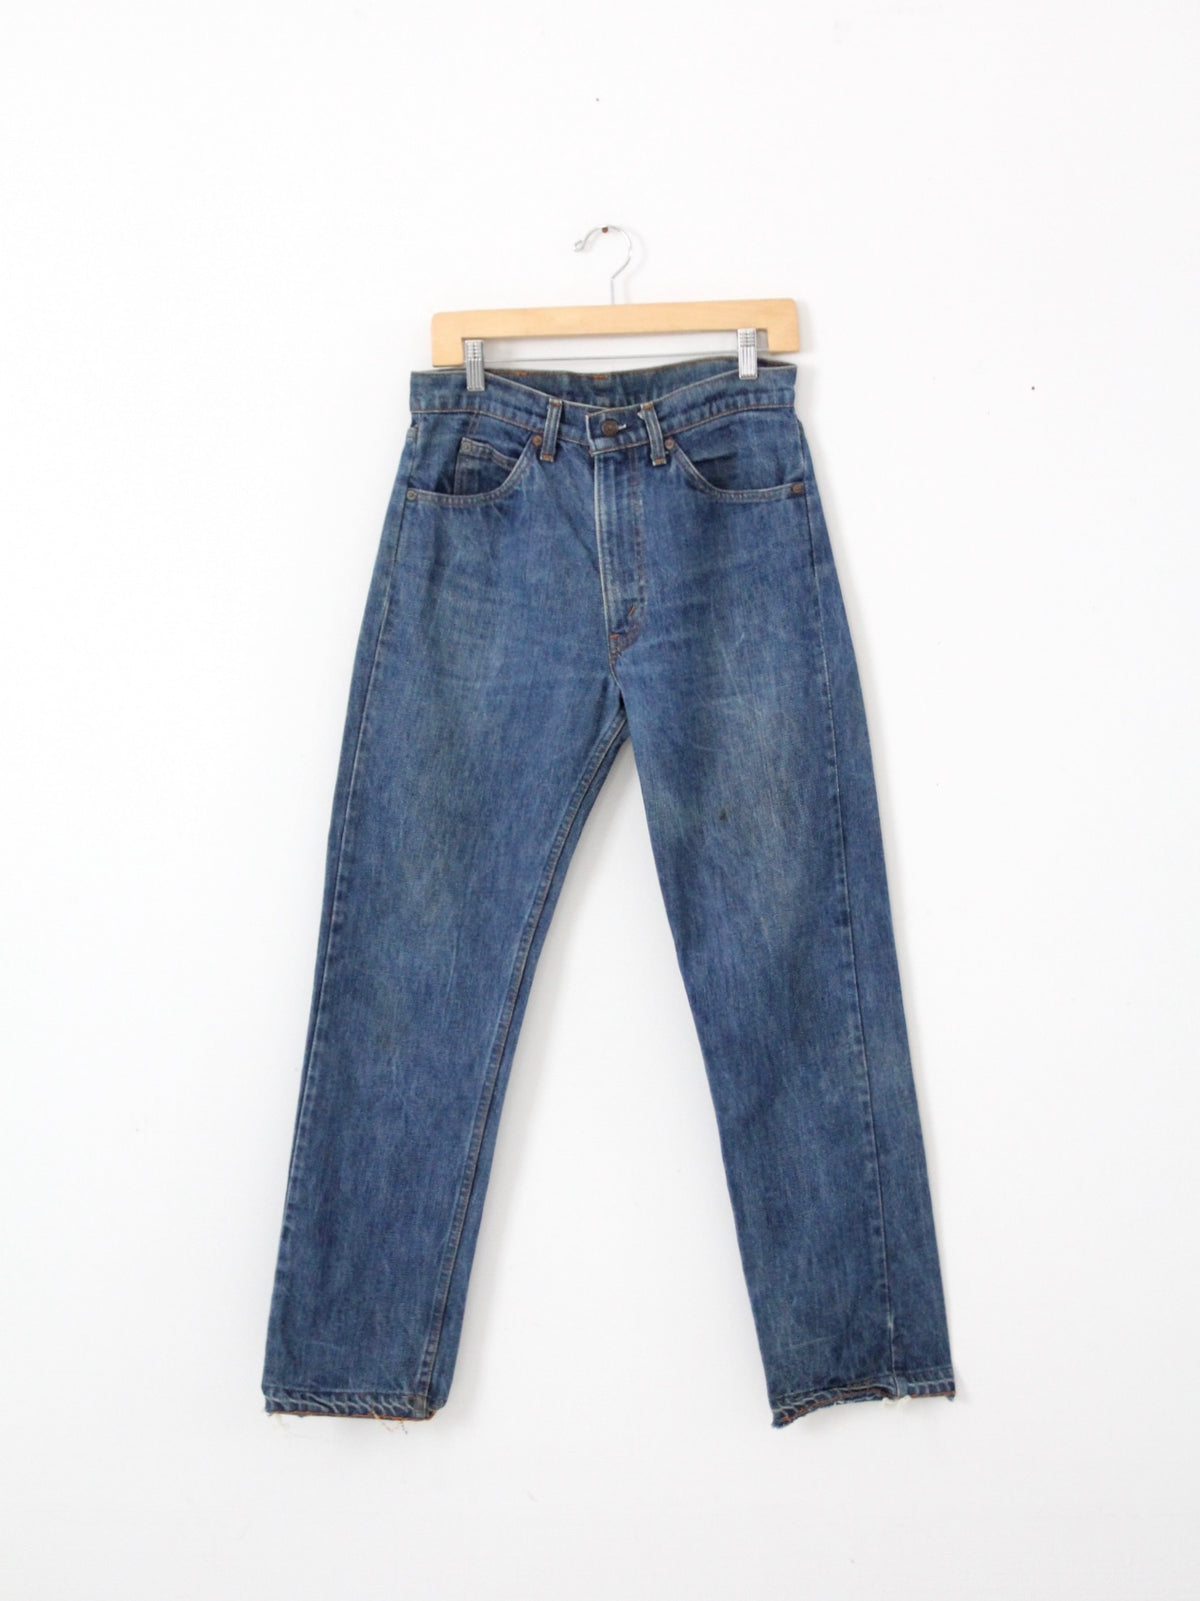 vintage Levis 505 jeans, 31 x 30 – 86 Vintage